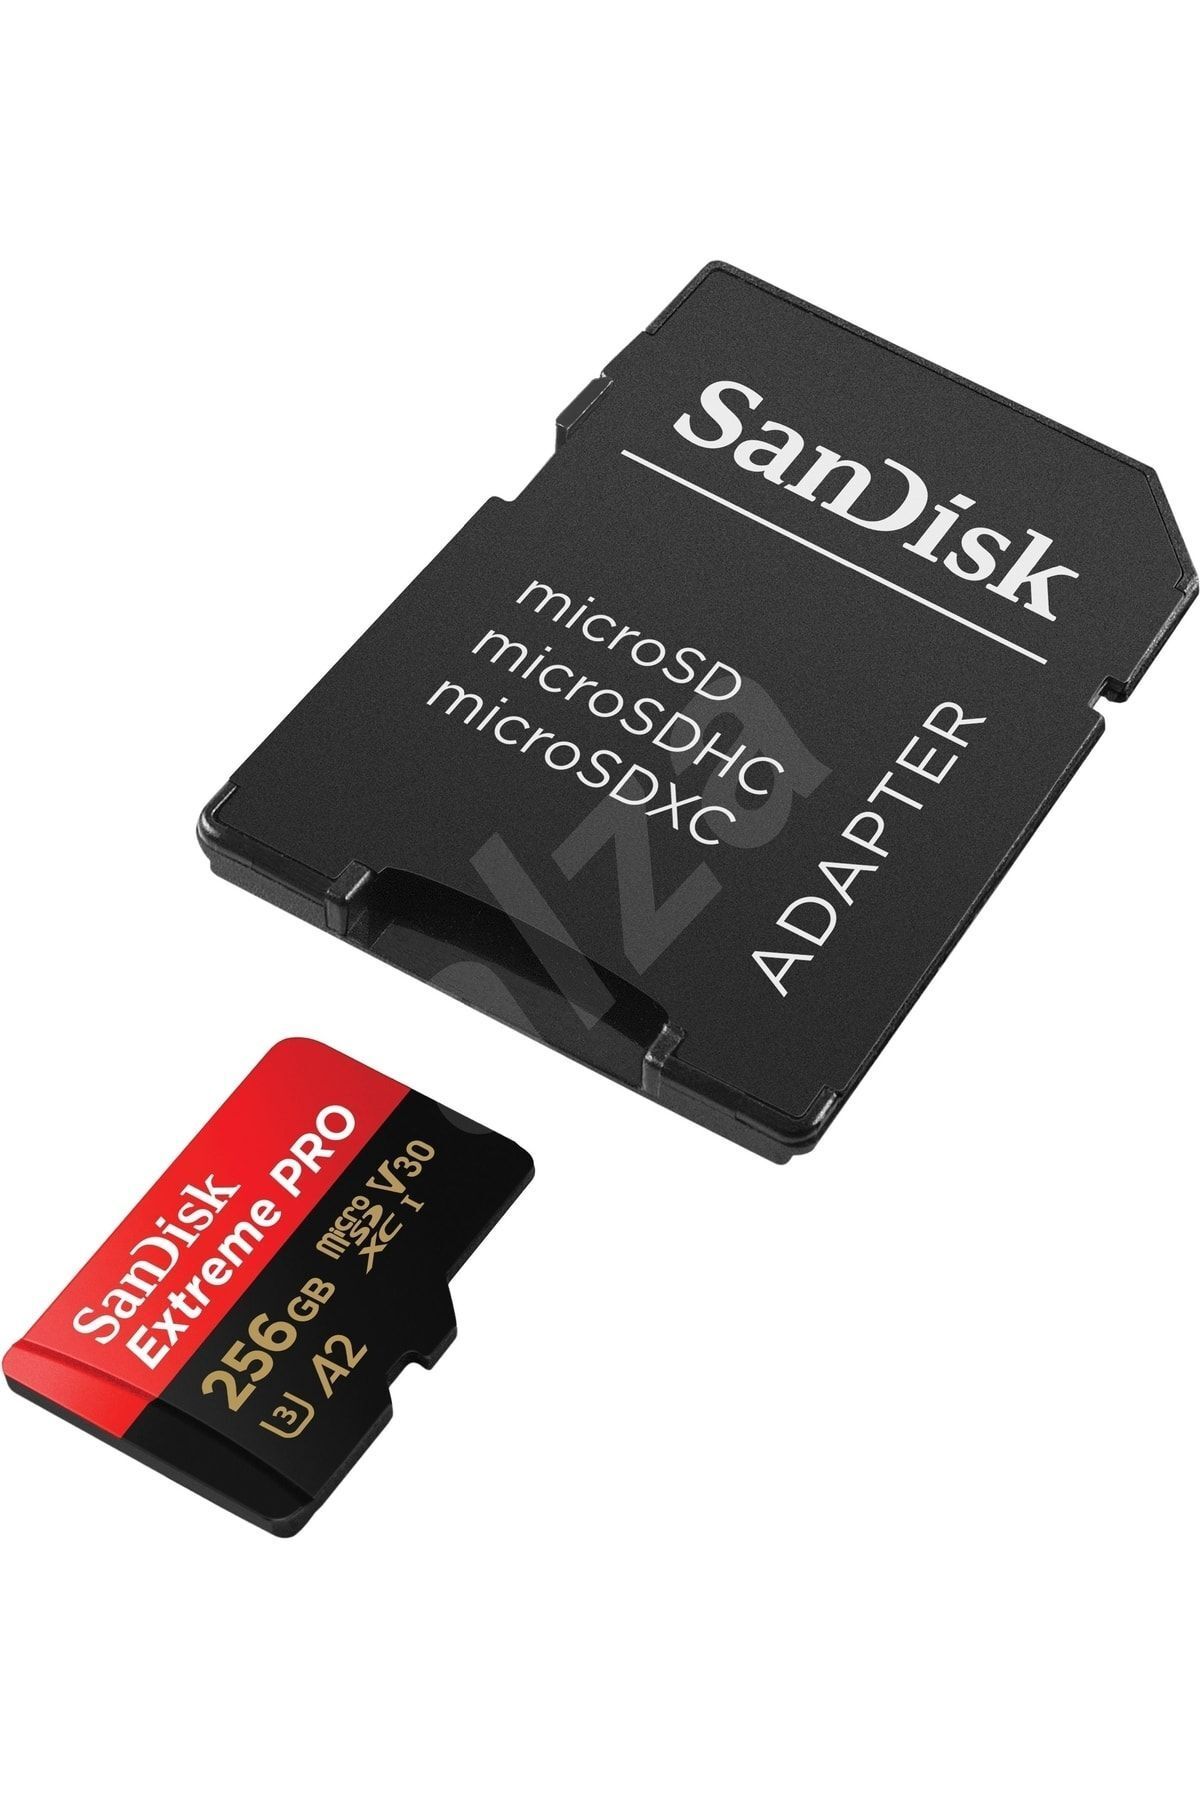 Sandisk Extreme Pro 256gb 200/140mb/s Microsdxc Uhs-ı Adaptörlü Hafıza Kartı Sdsqxcd-256g-gn6ma